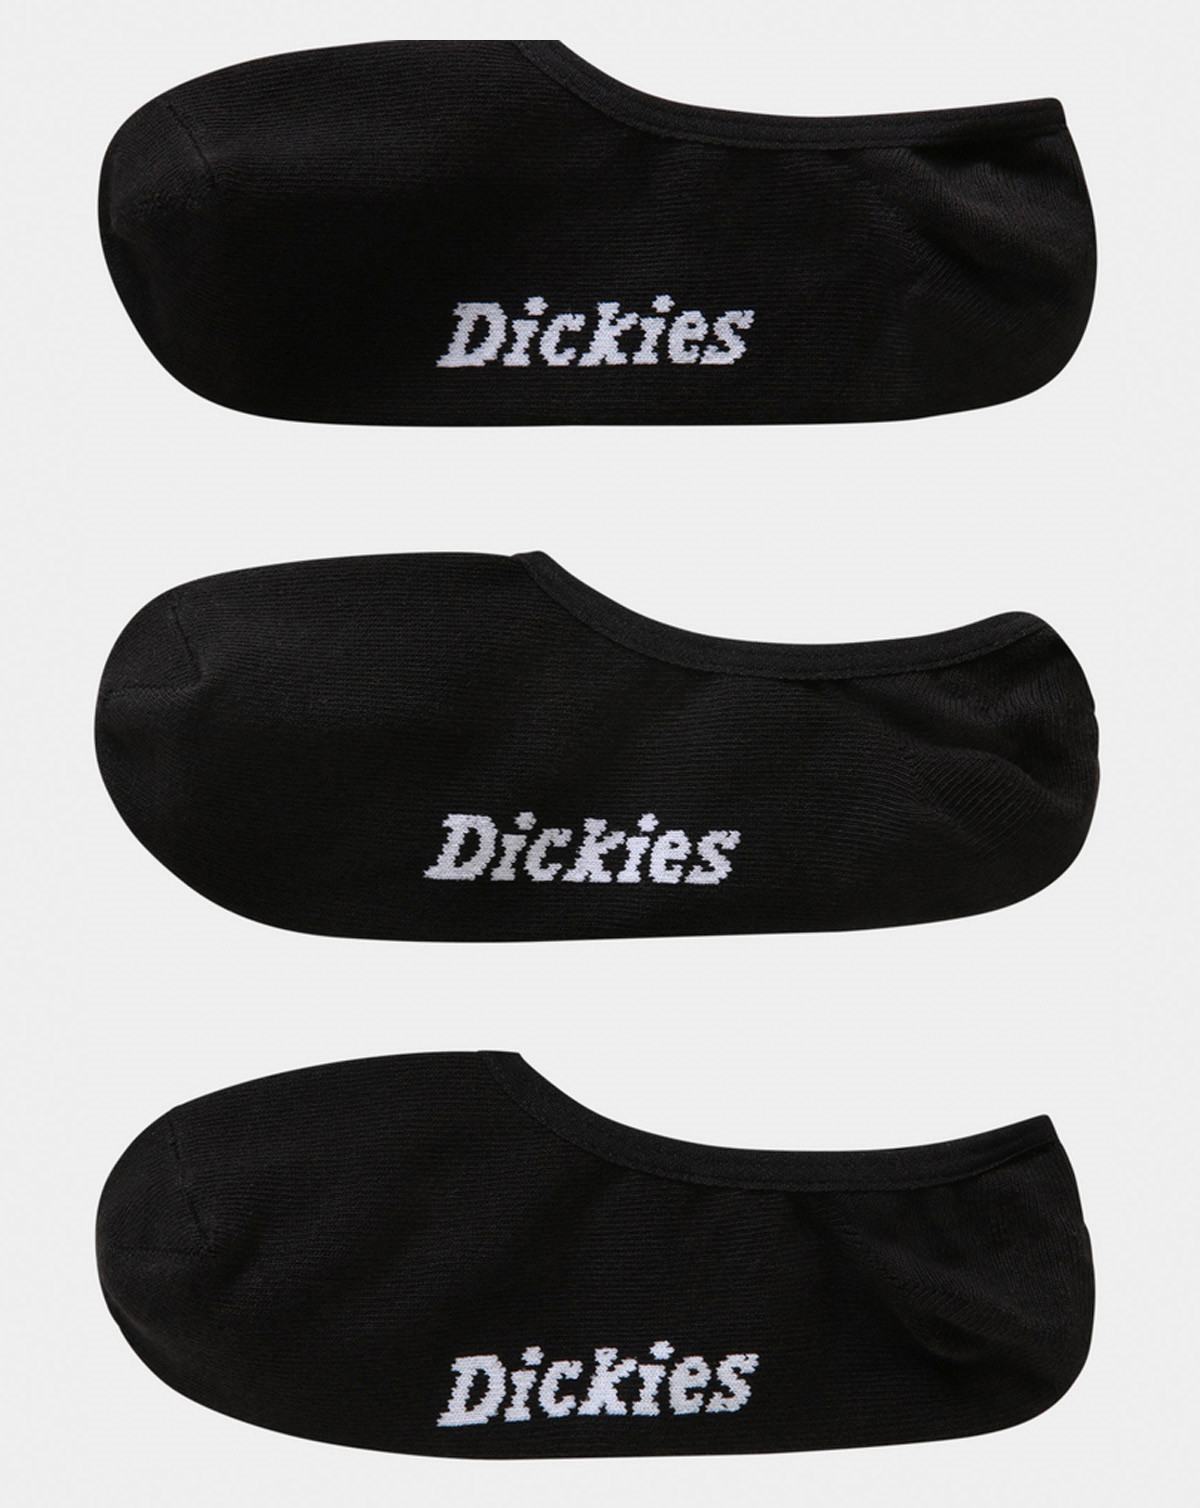 4: Dickies Invisible Socks - 3 Pack (Sort, 39-42)